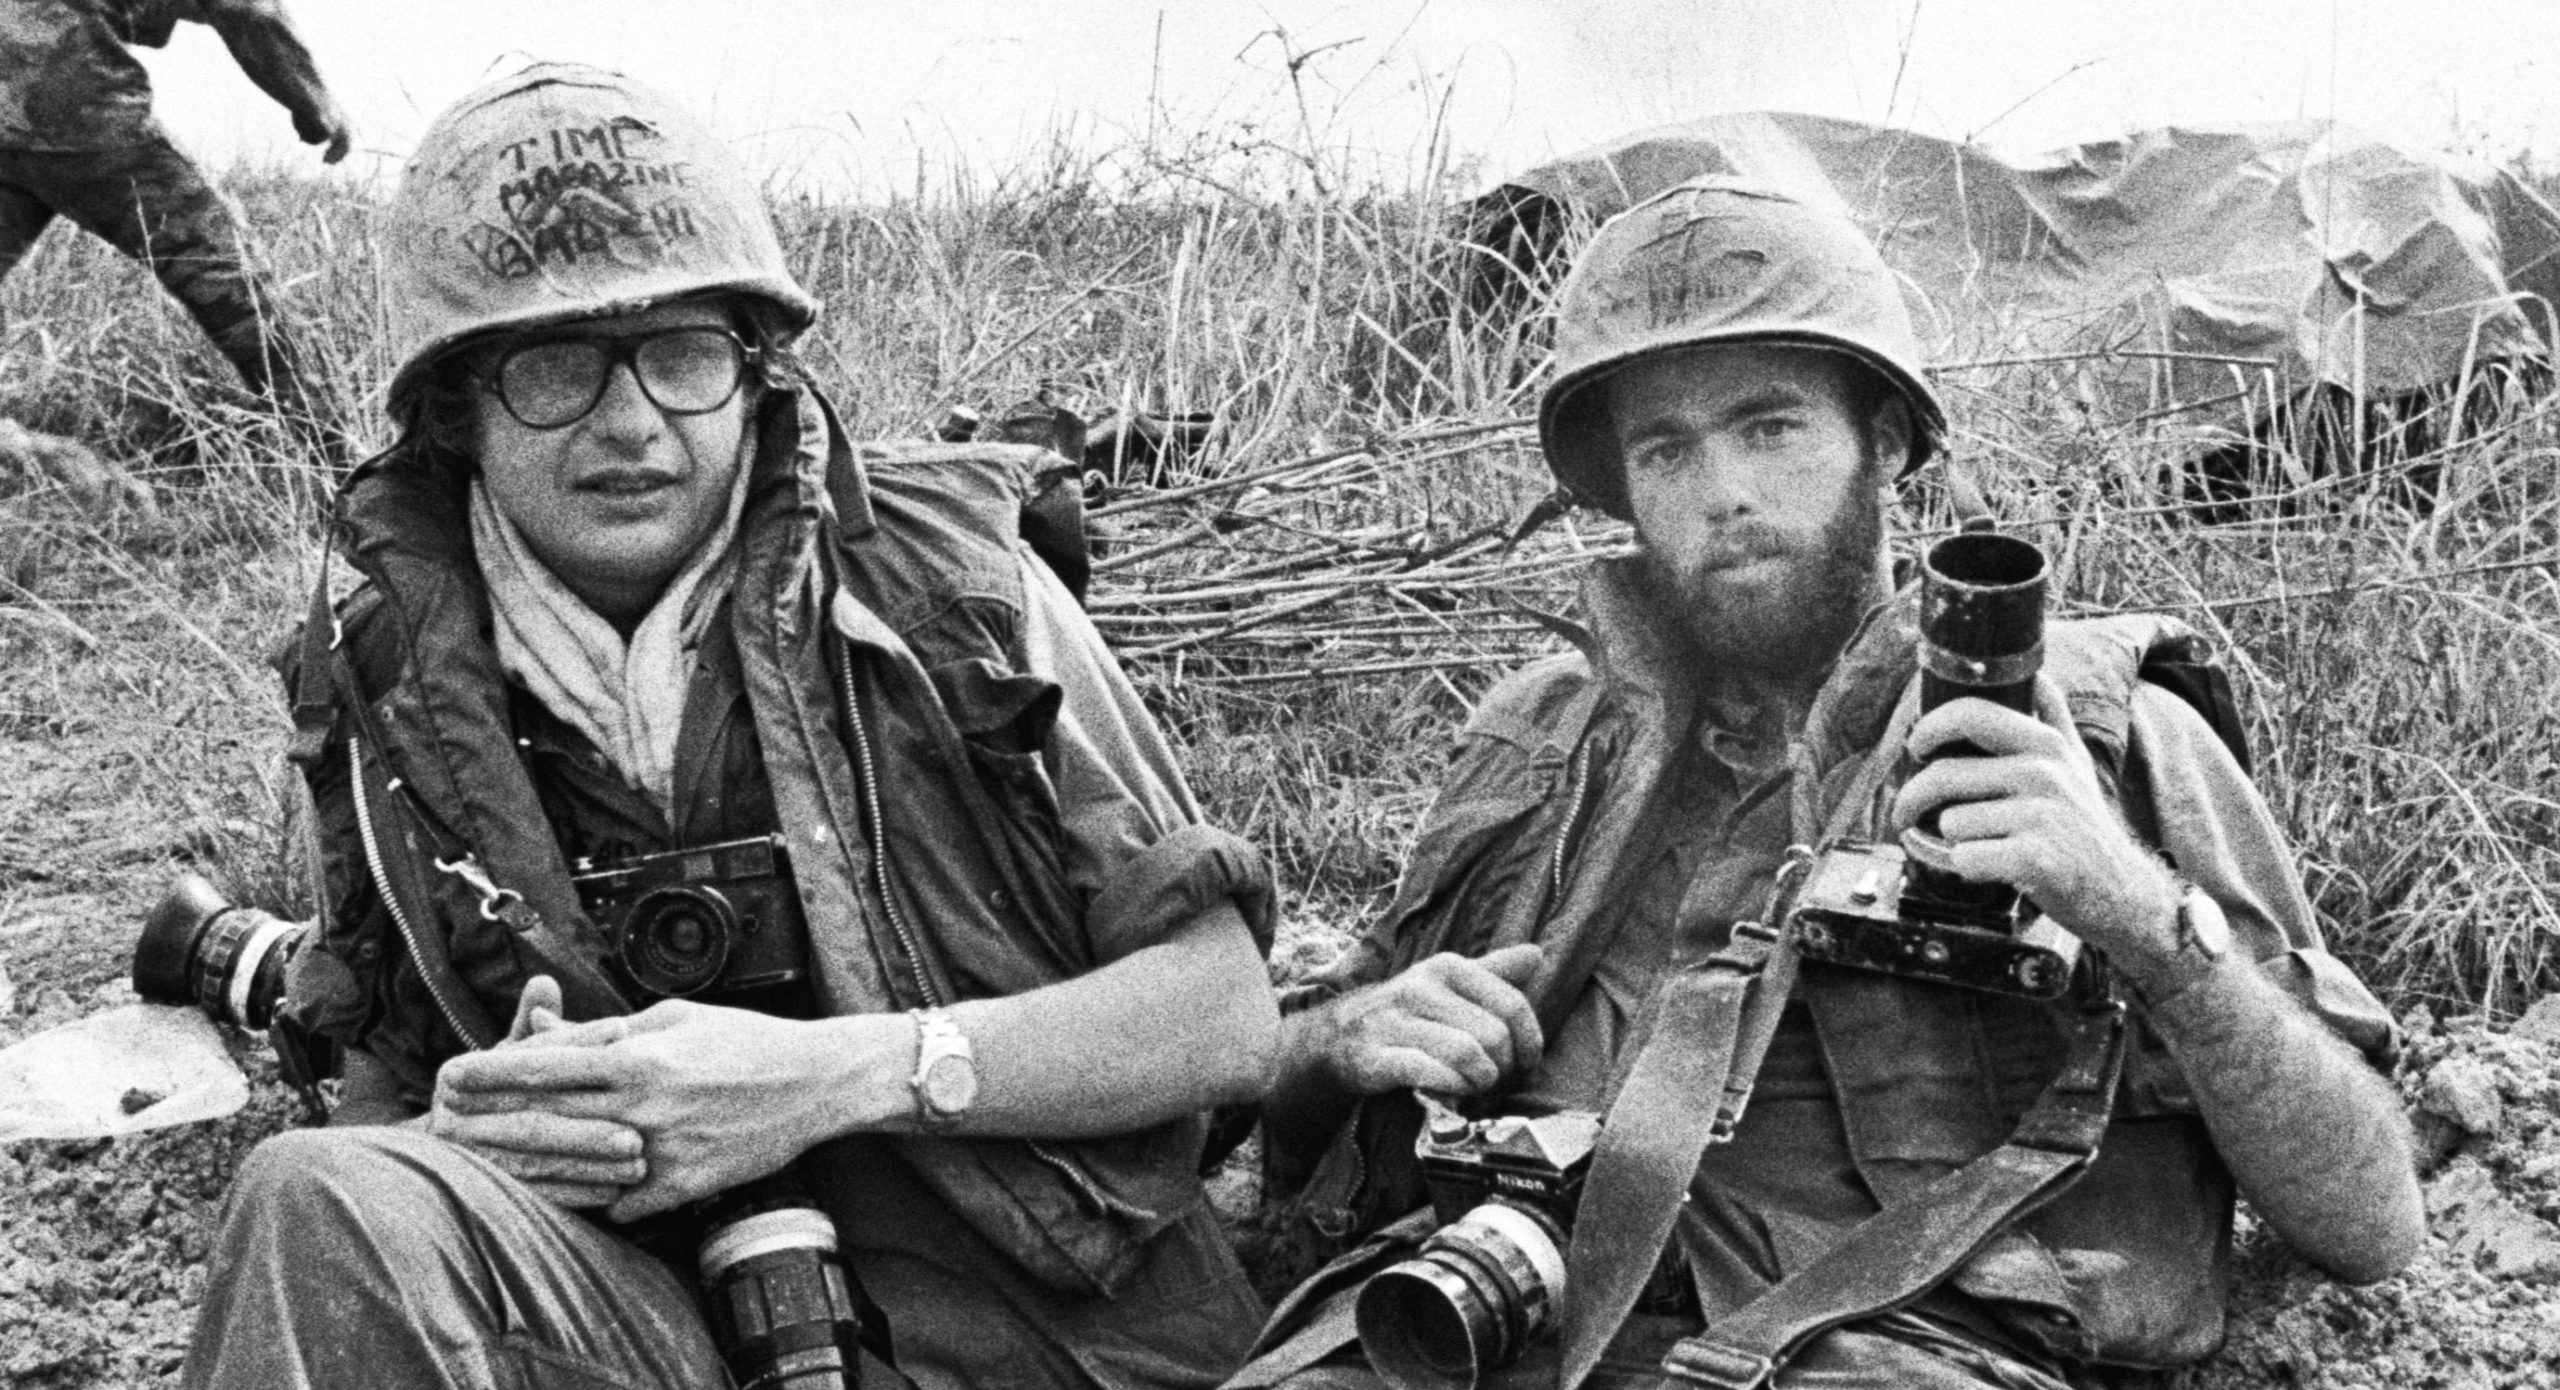 Dirck Halstead and David Kennerly in Vietnam, 1972